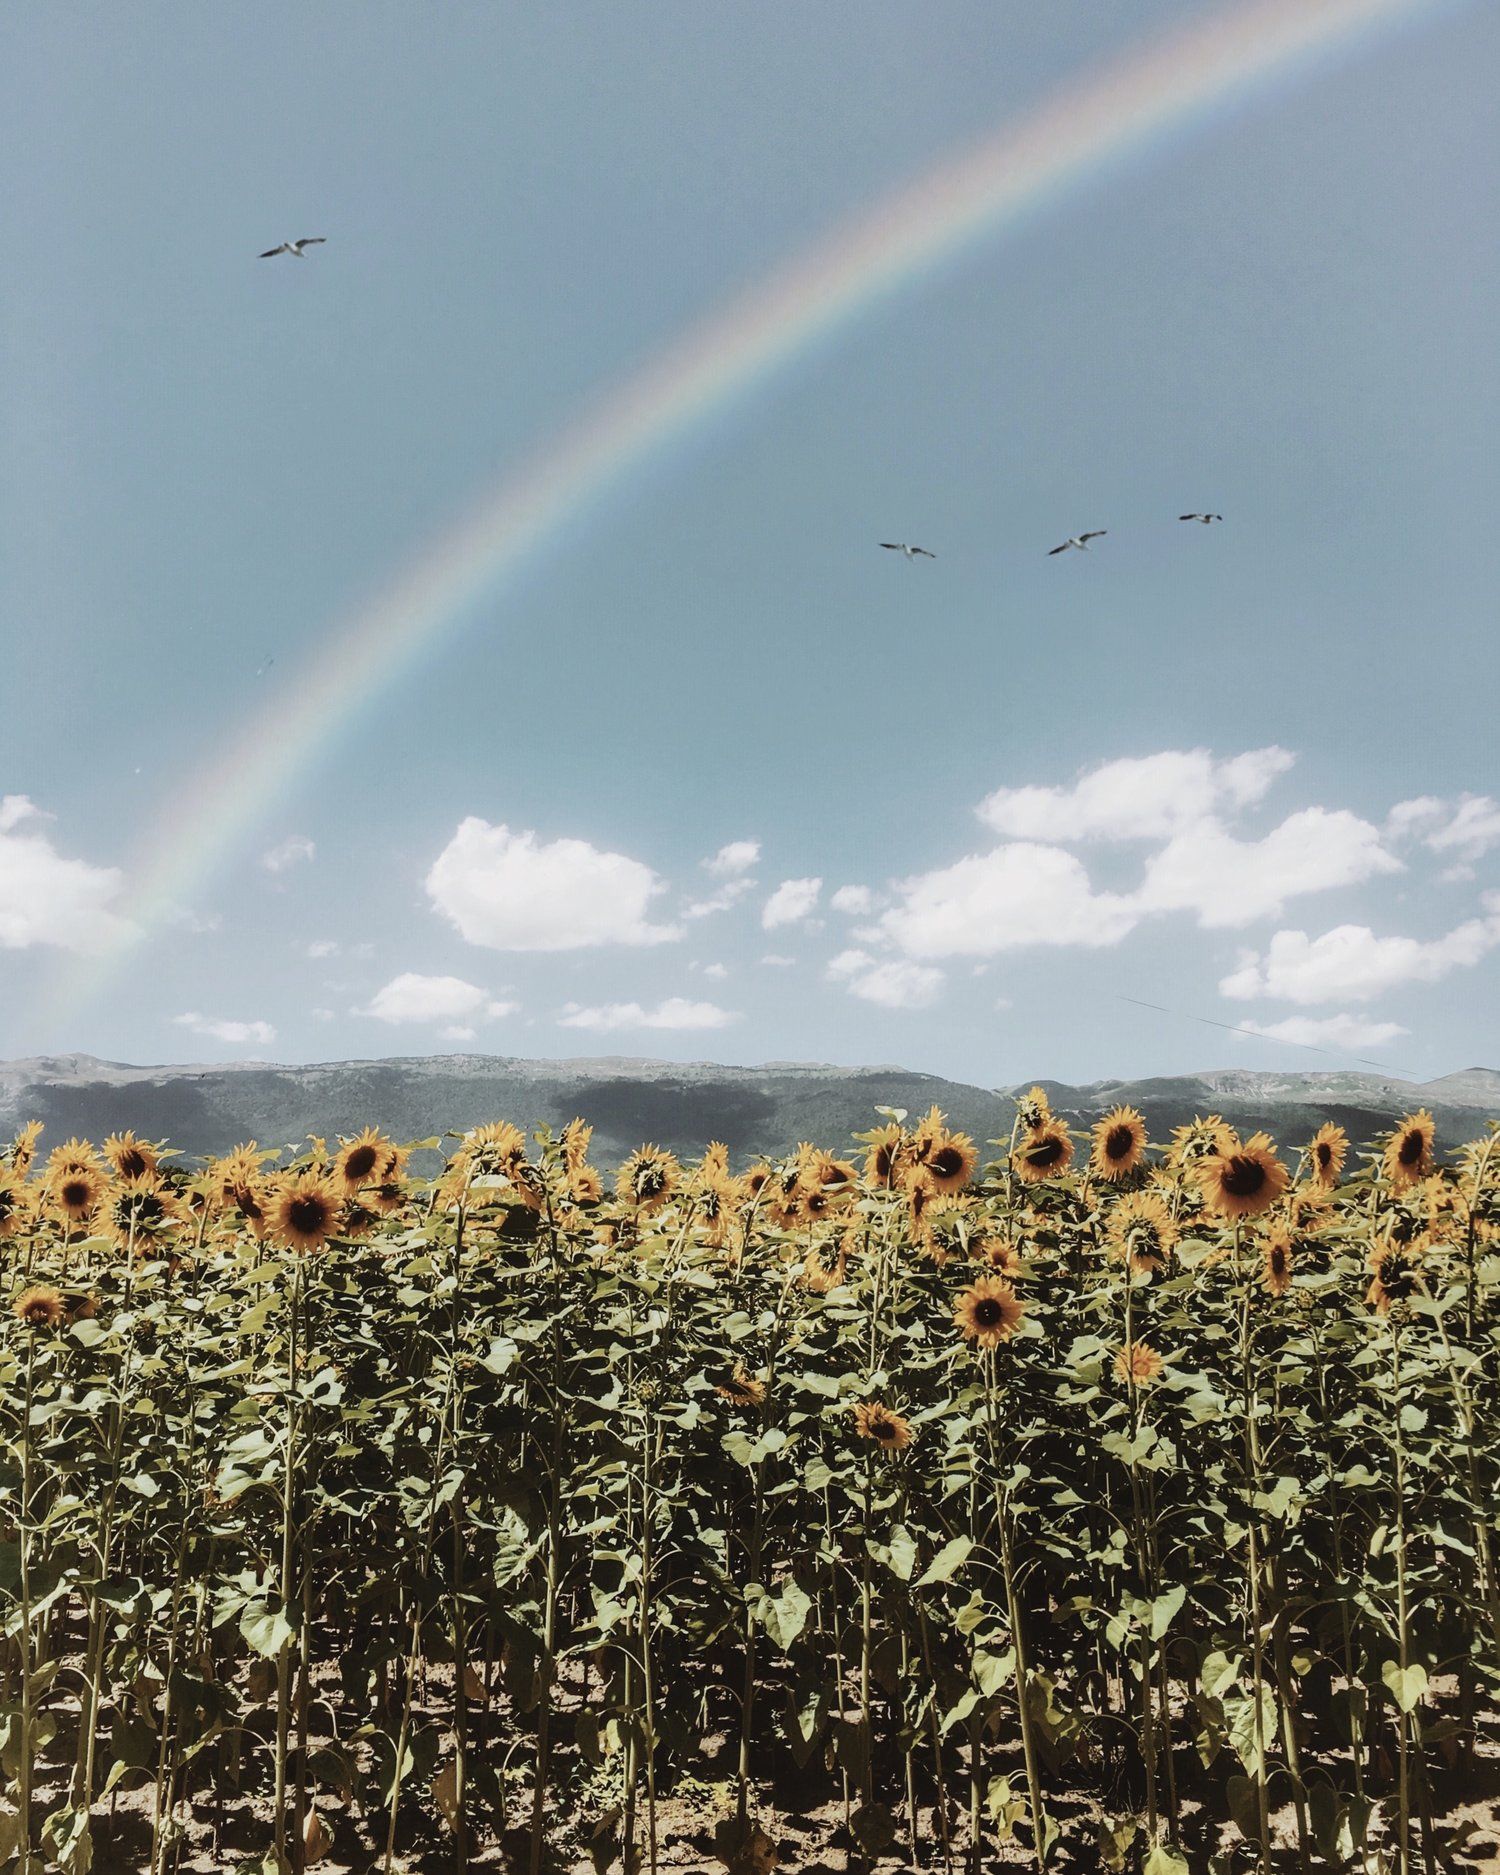 A rainbow arches over a field of sunflowers - Farm